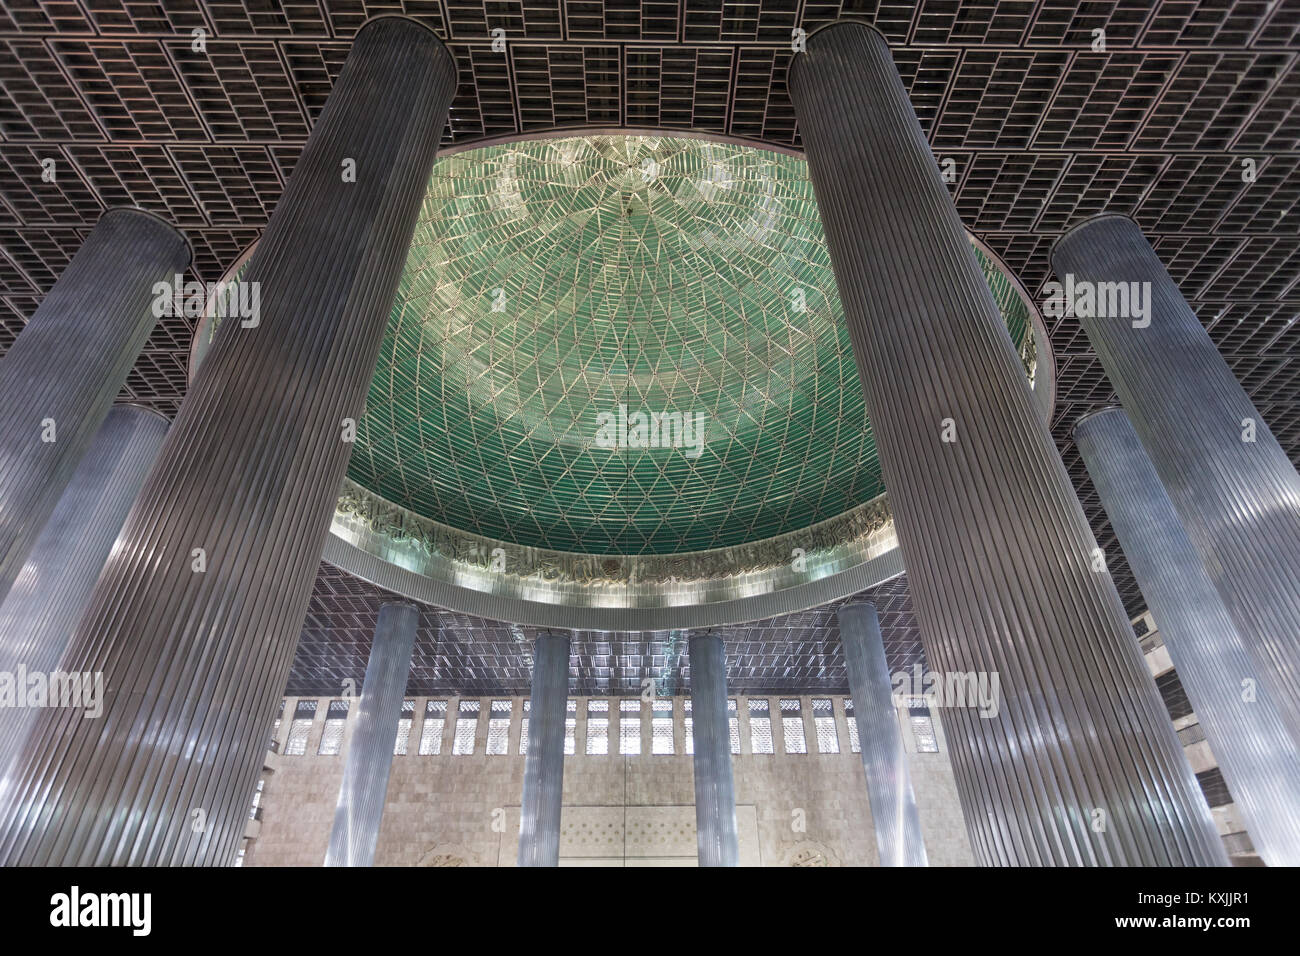 JAKARTA, INDONÉSIE - 19 octobre 2014 : La Mosquée Istiqlal à Jakarta, l'Indonésie est la plus grande mosquée d'Asie du sud-est. Banque D'Images